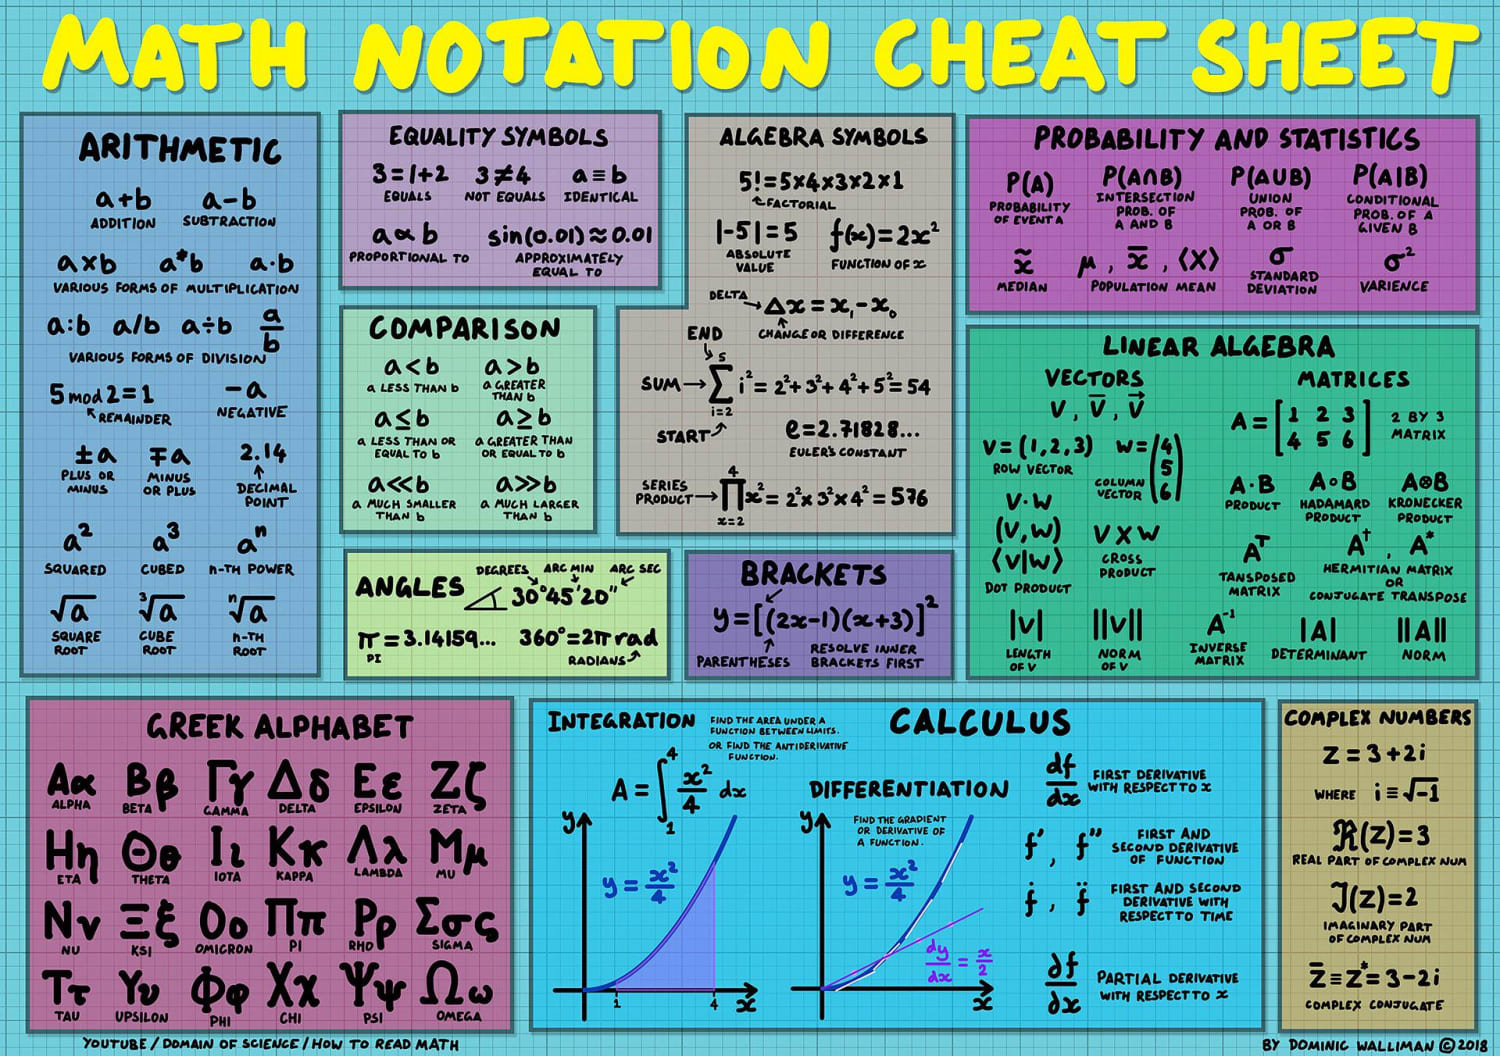 Yay! Math Notations: